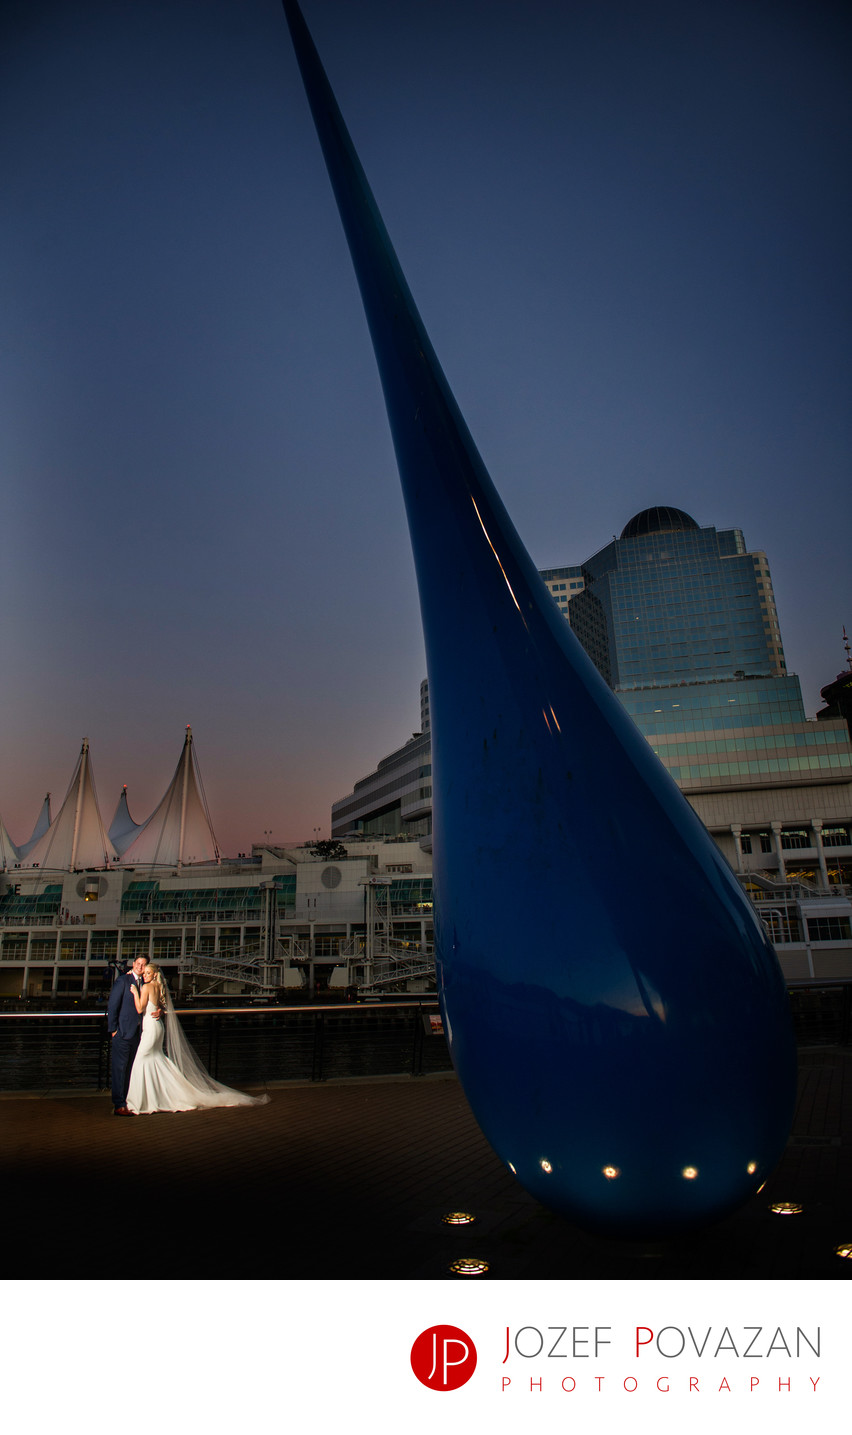 Convention Centre Wedding Photographers dusk portrait